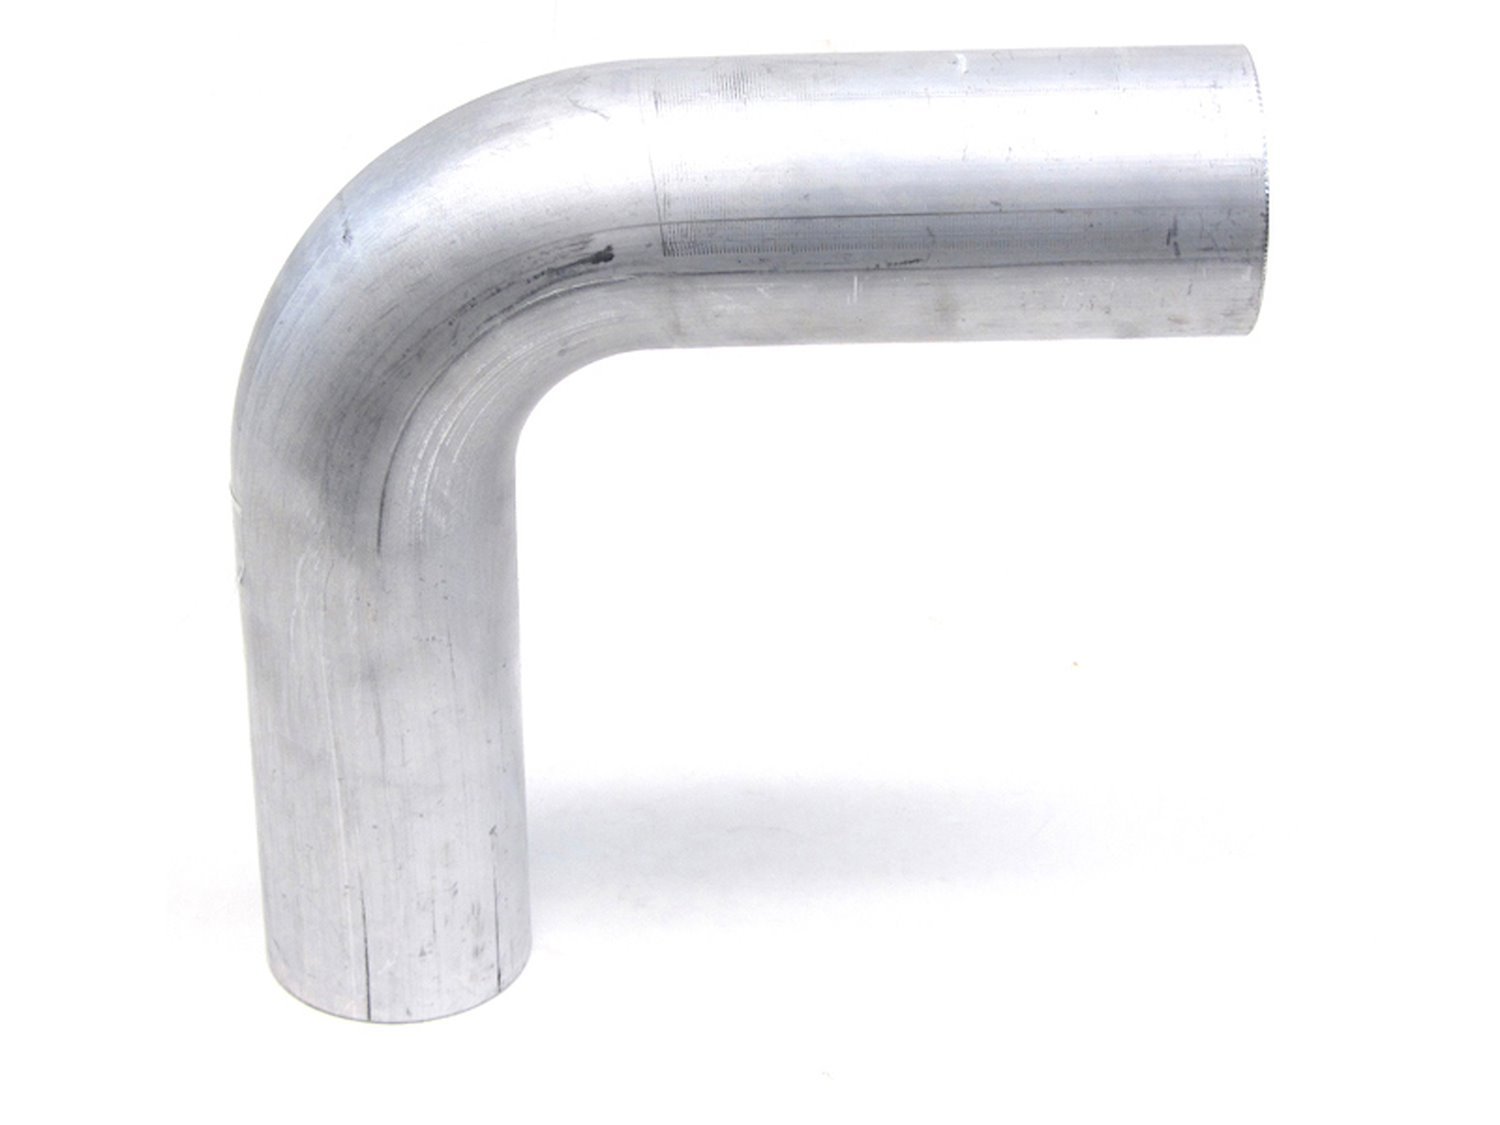 AT90-225-CLR-225 Aluminum Elbow Tube, 6061 Aluminum, 90-Degree Bend Elbow Tubing, 2-1/4 in. OD, Tight Radius, 2-1/4 in. CLR